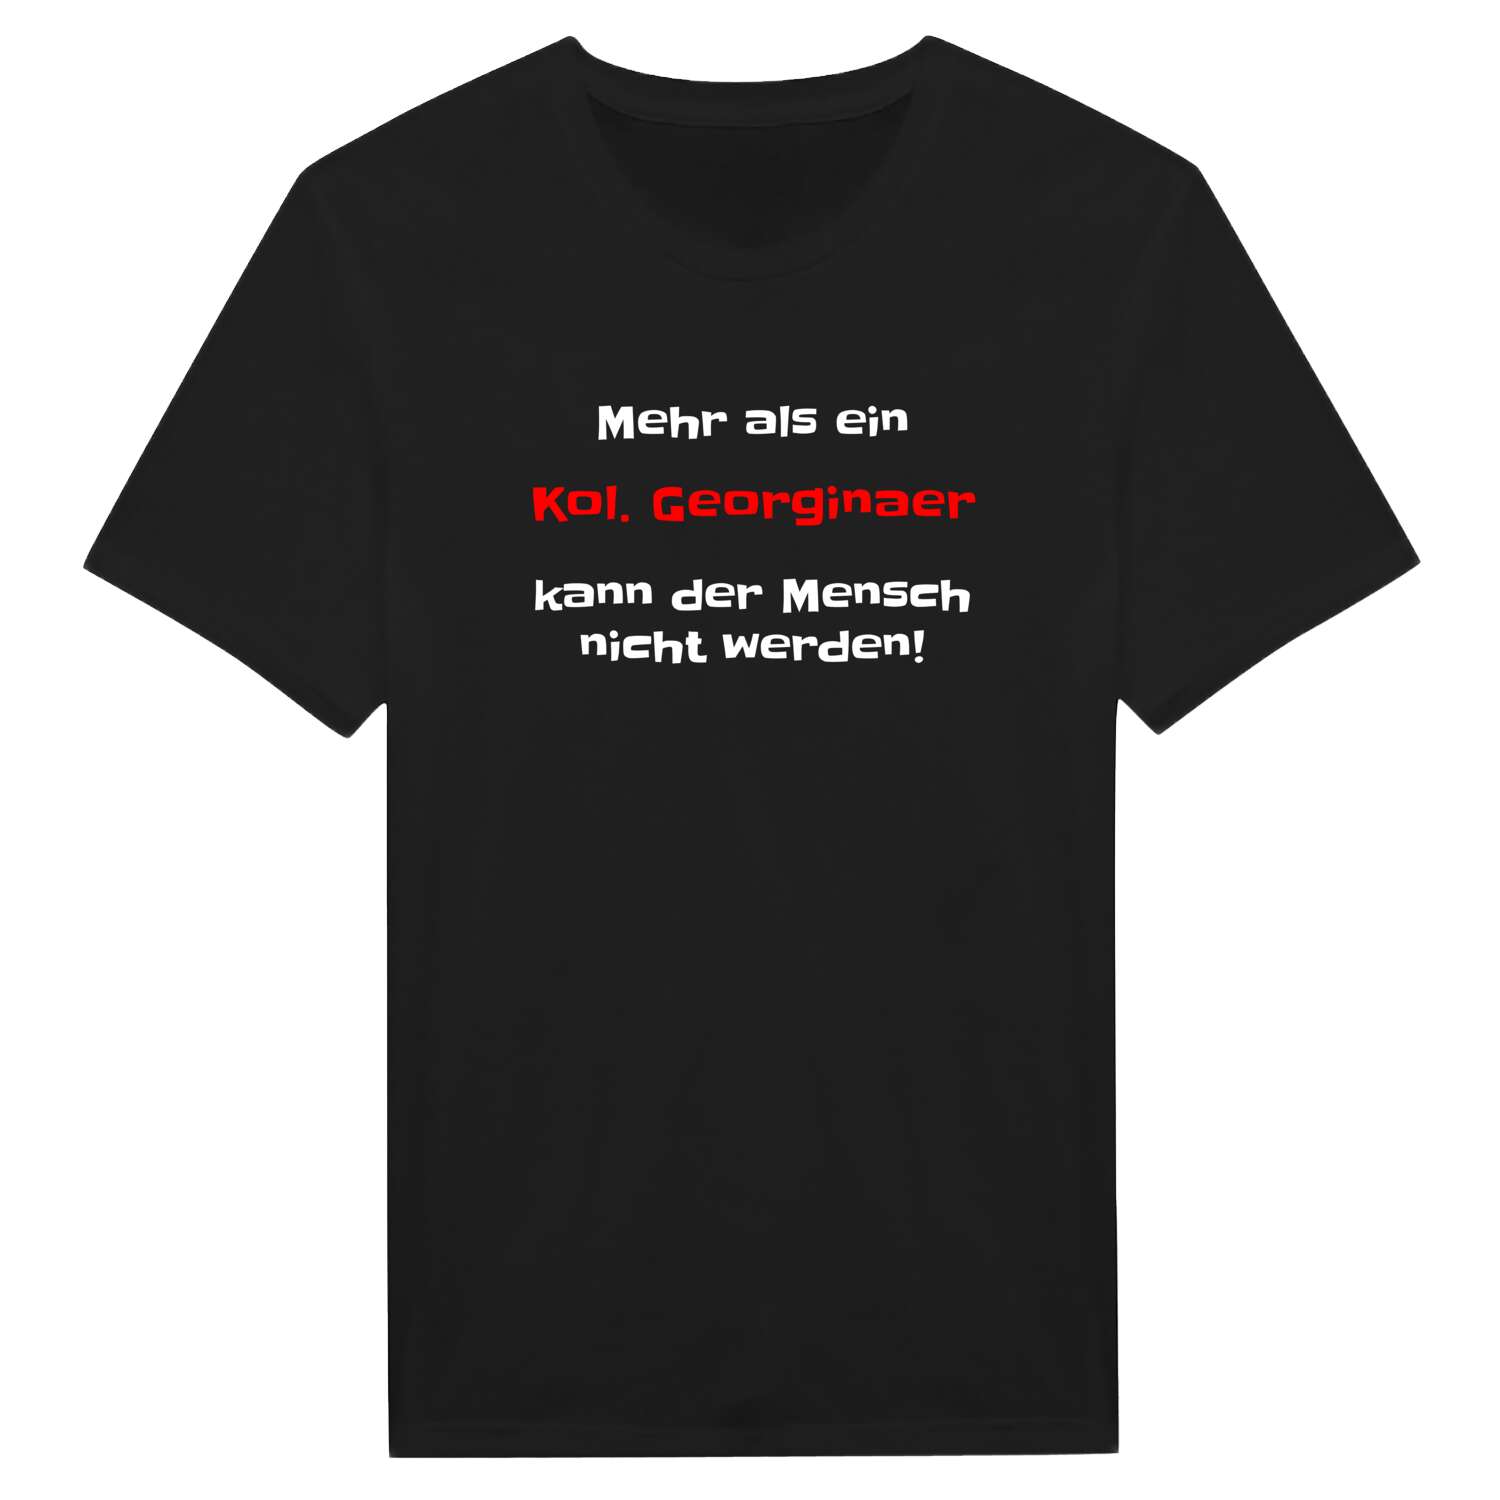 Kol. Georgina T-Shirt »Mehr als ein«